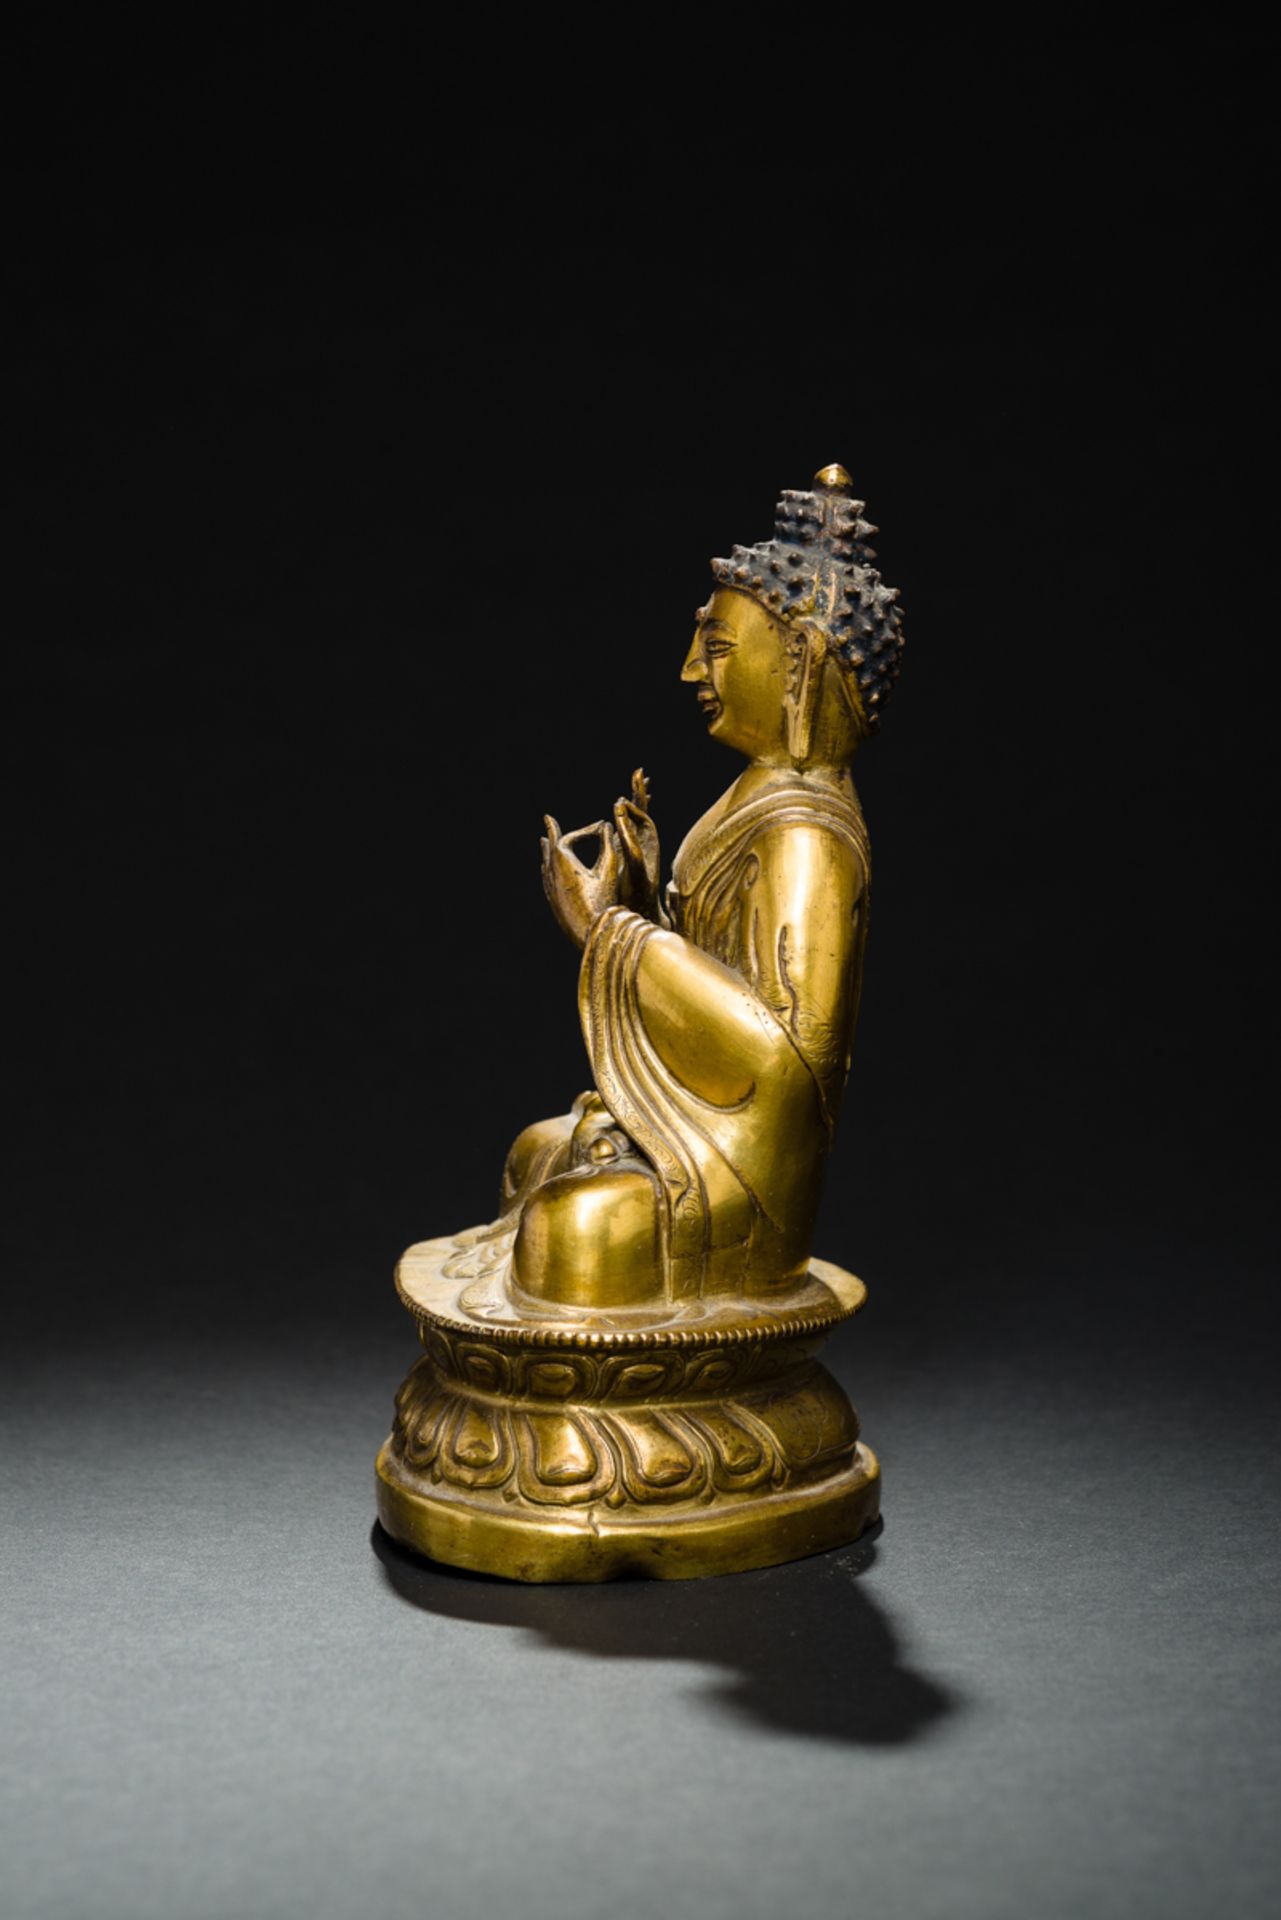 DER PREDIGENDE BUDDHA SHAKYAMUNIFeuervergoldete Bronze. Sinotibetisch, Qing-Dynastie, fr. 19. Jh.In - Image 4 of 6